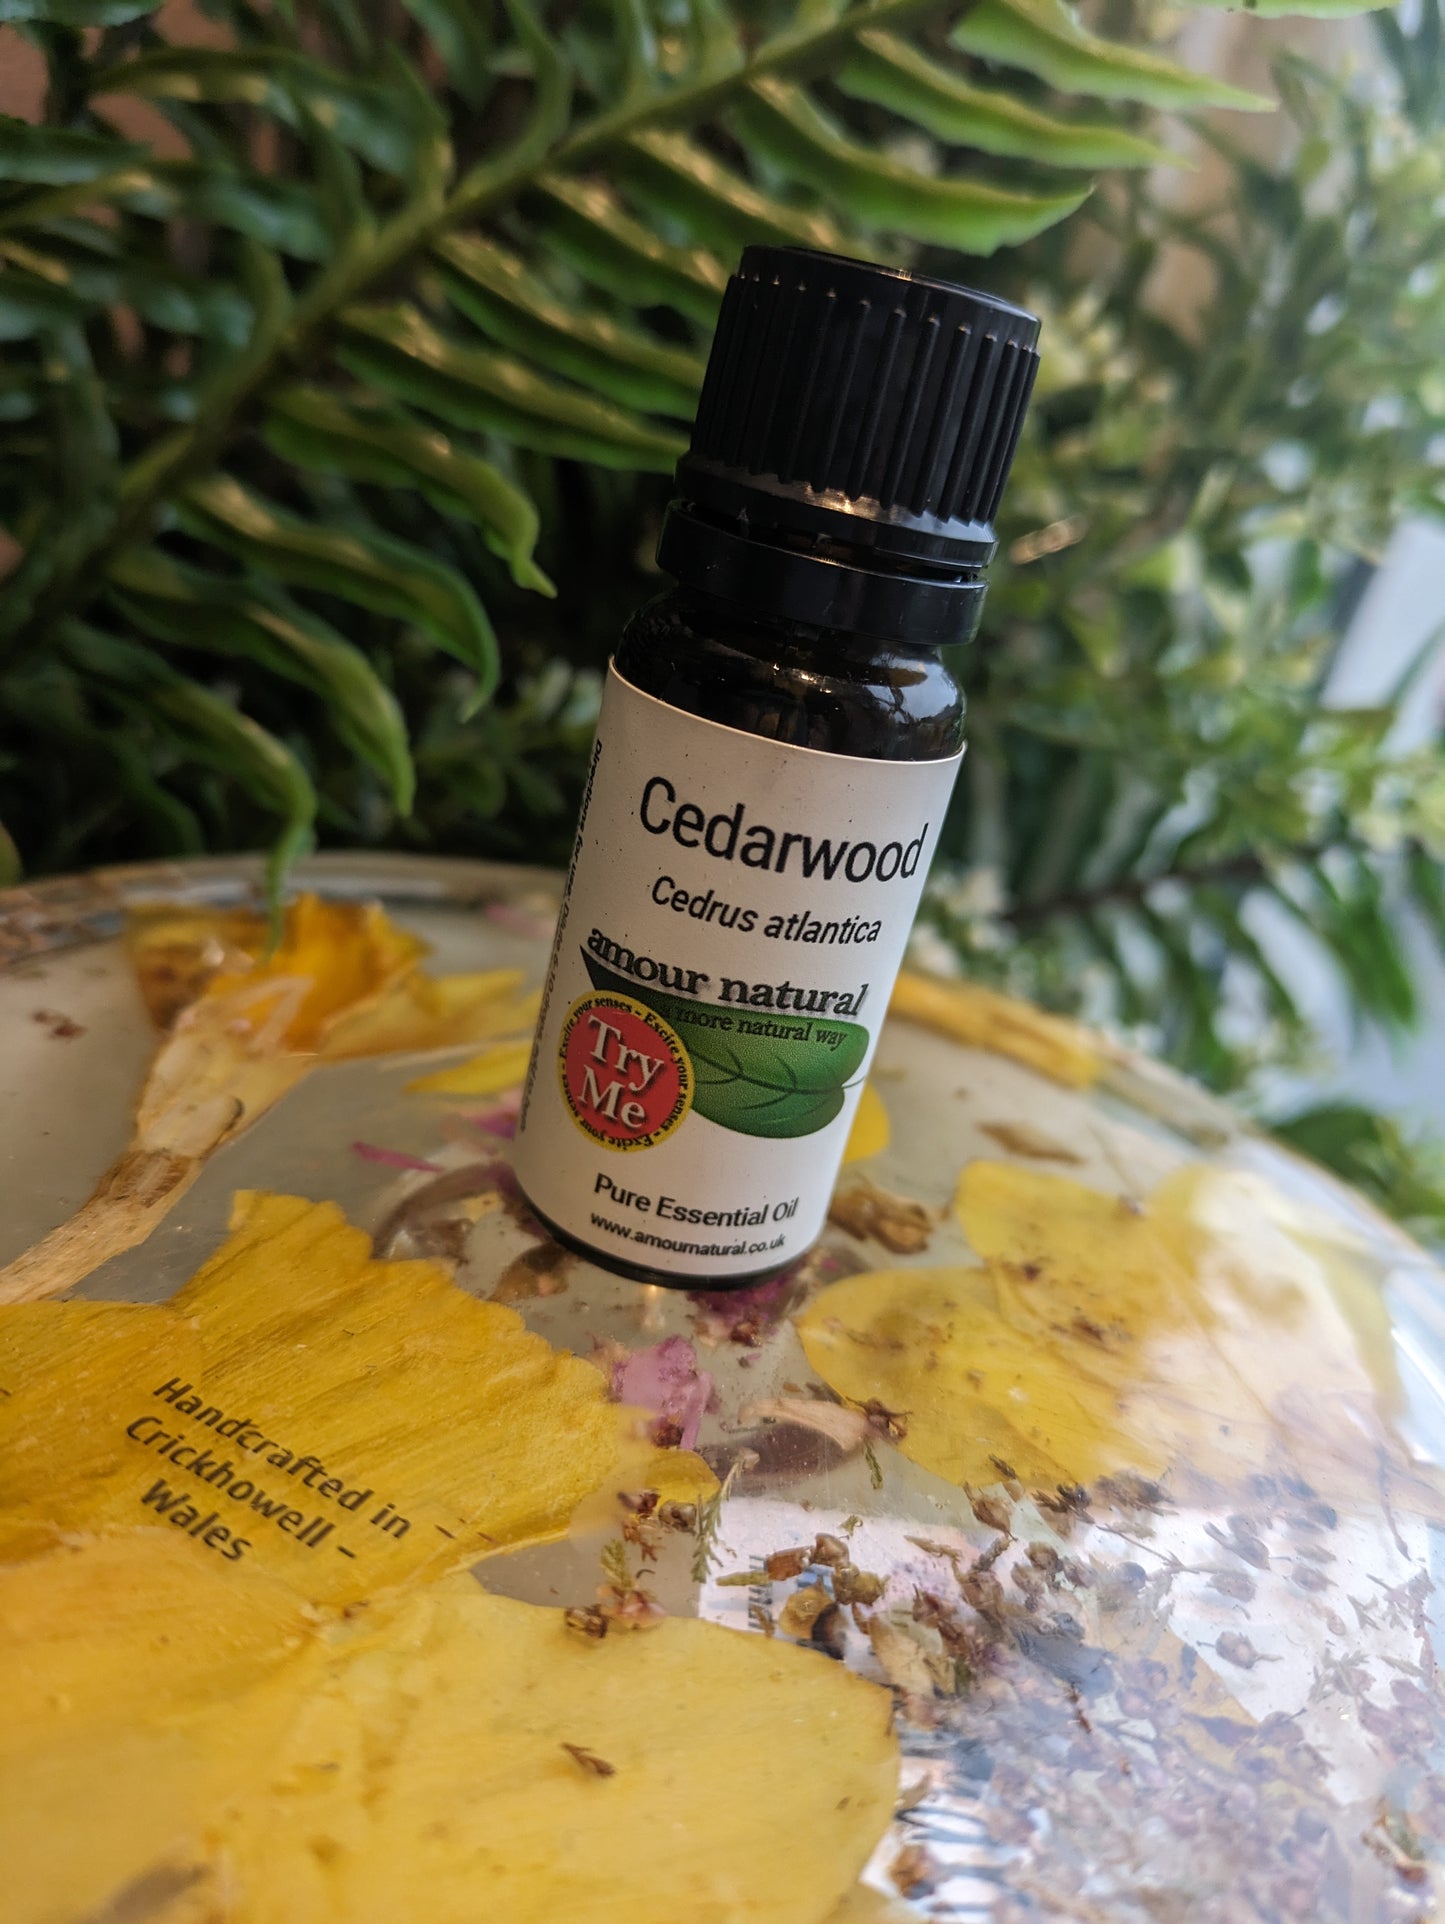 Cedarwood Essential Oil (10ml)